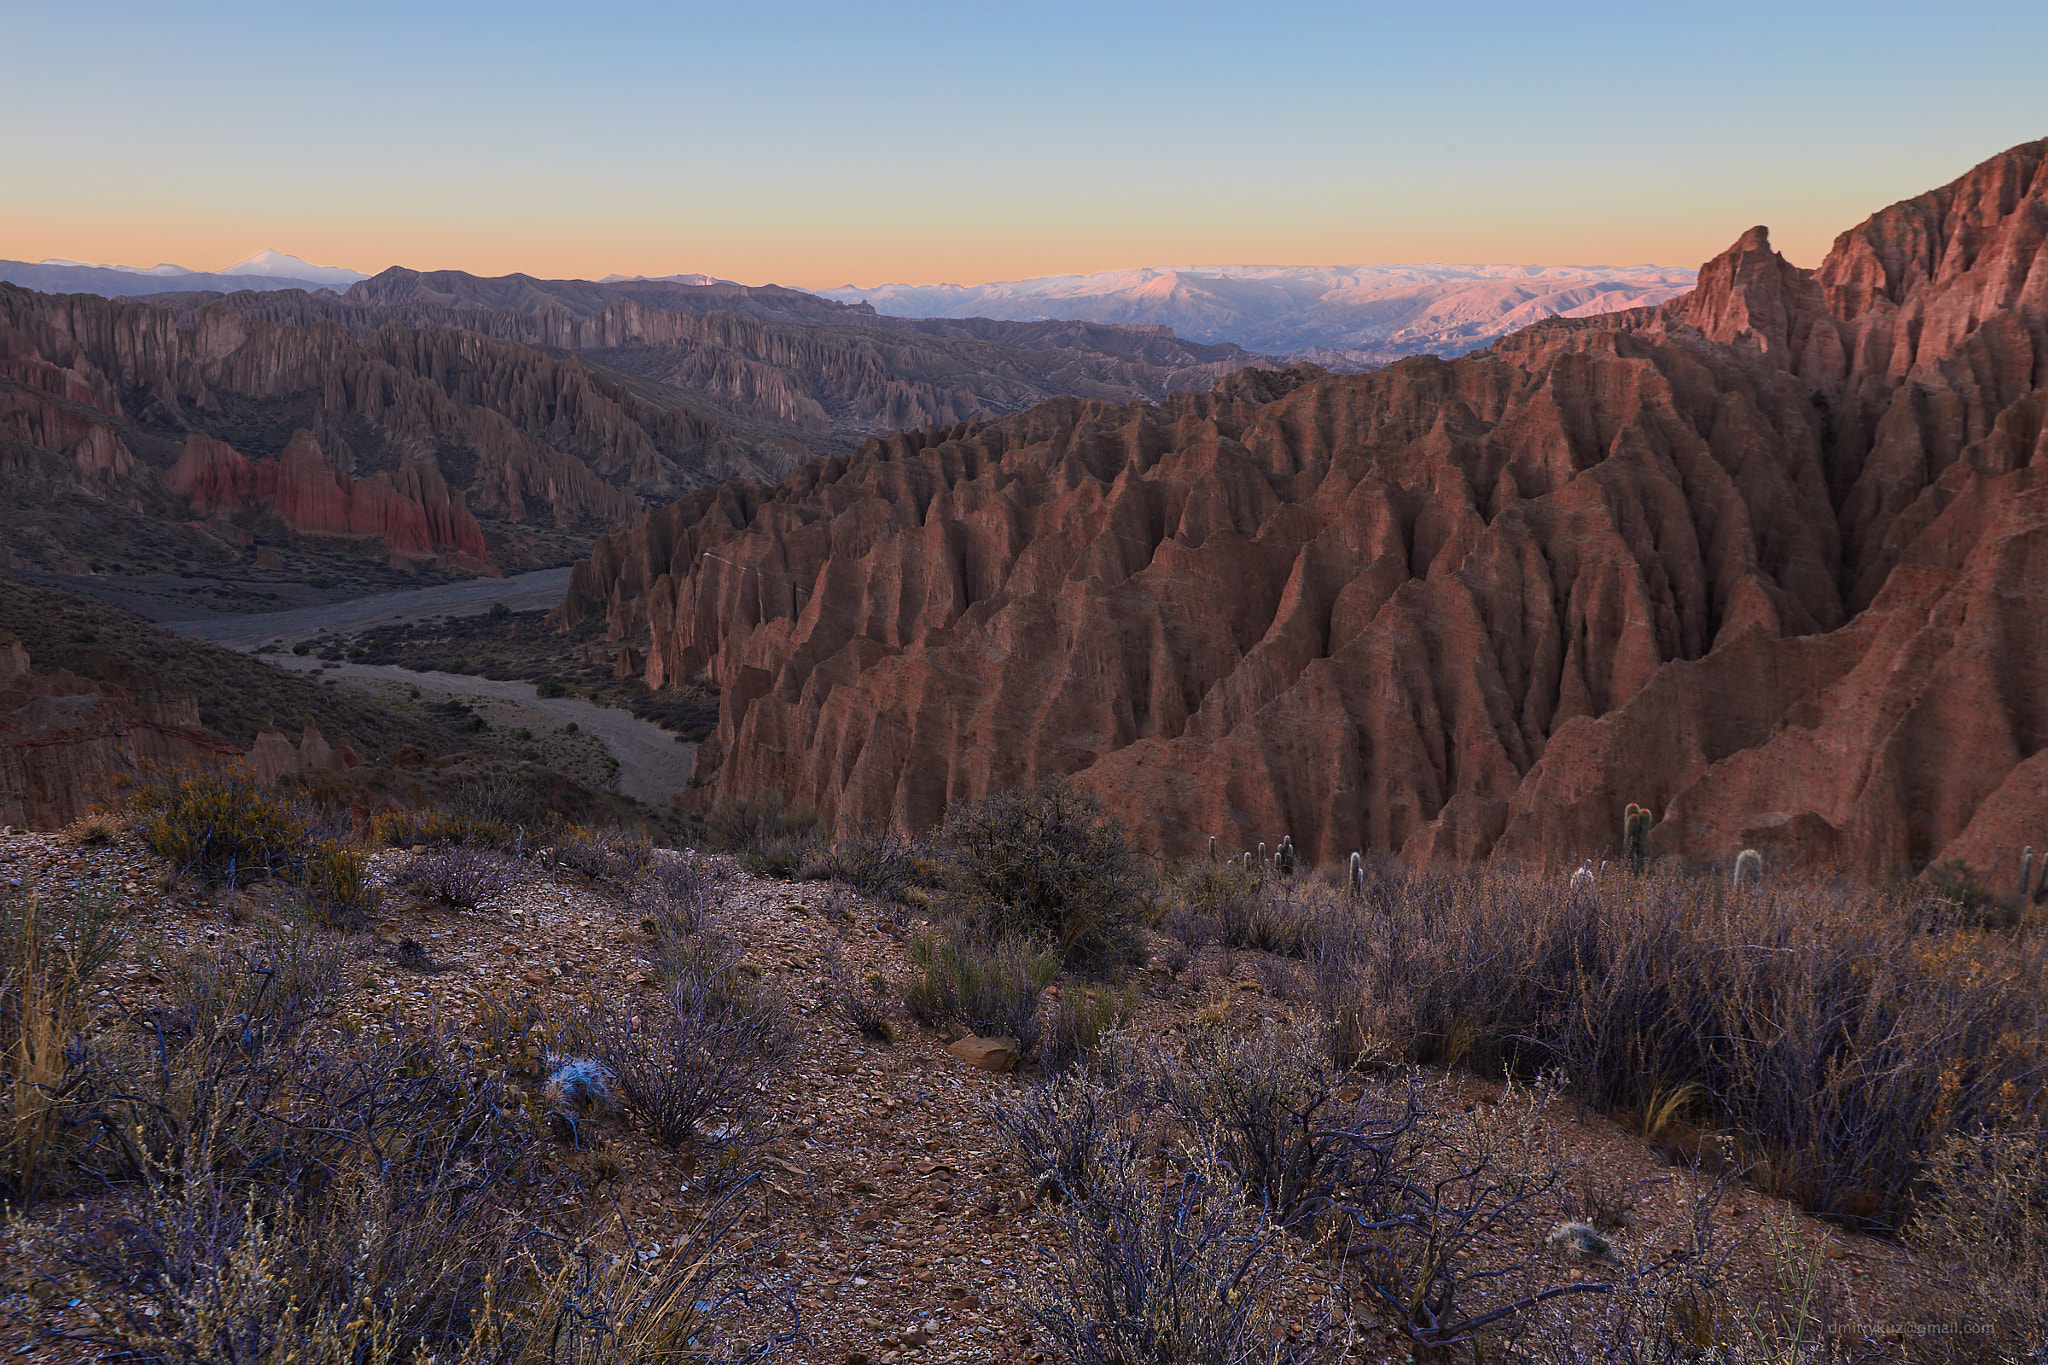 Canon EOS 6D sample photo. Evening canyon photography